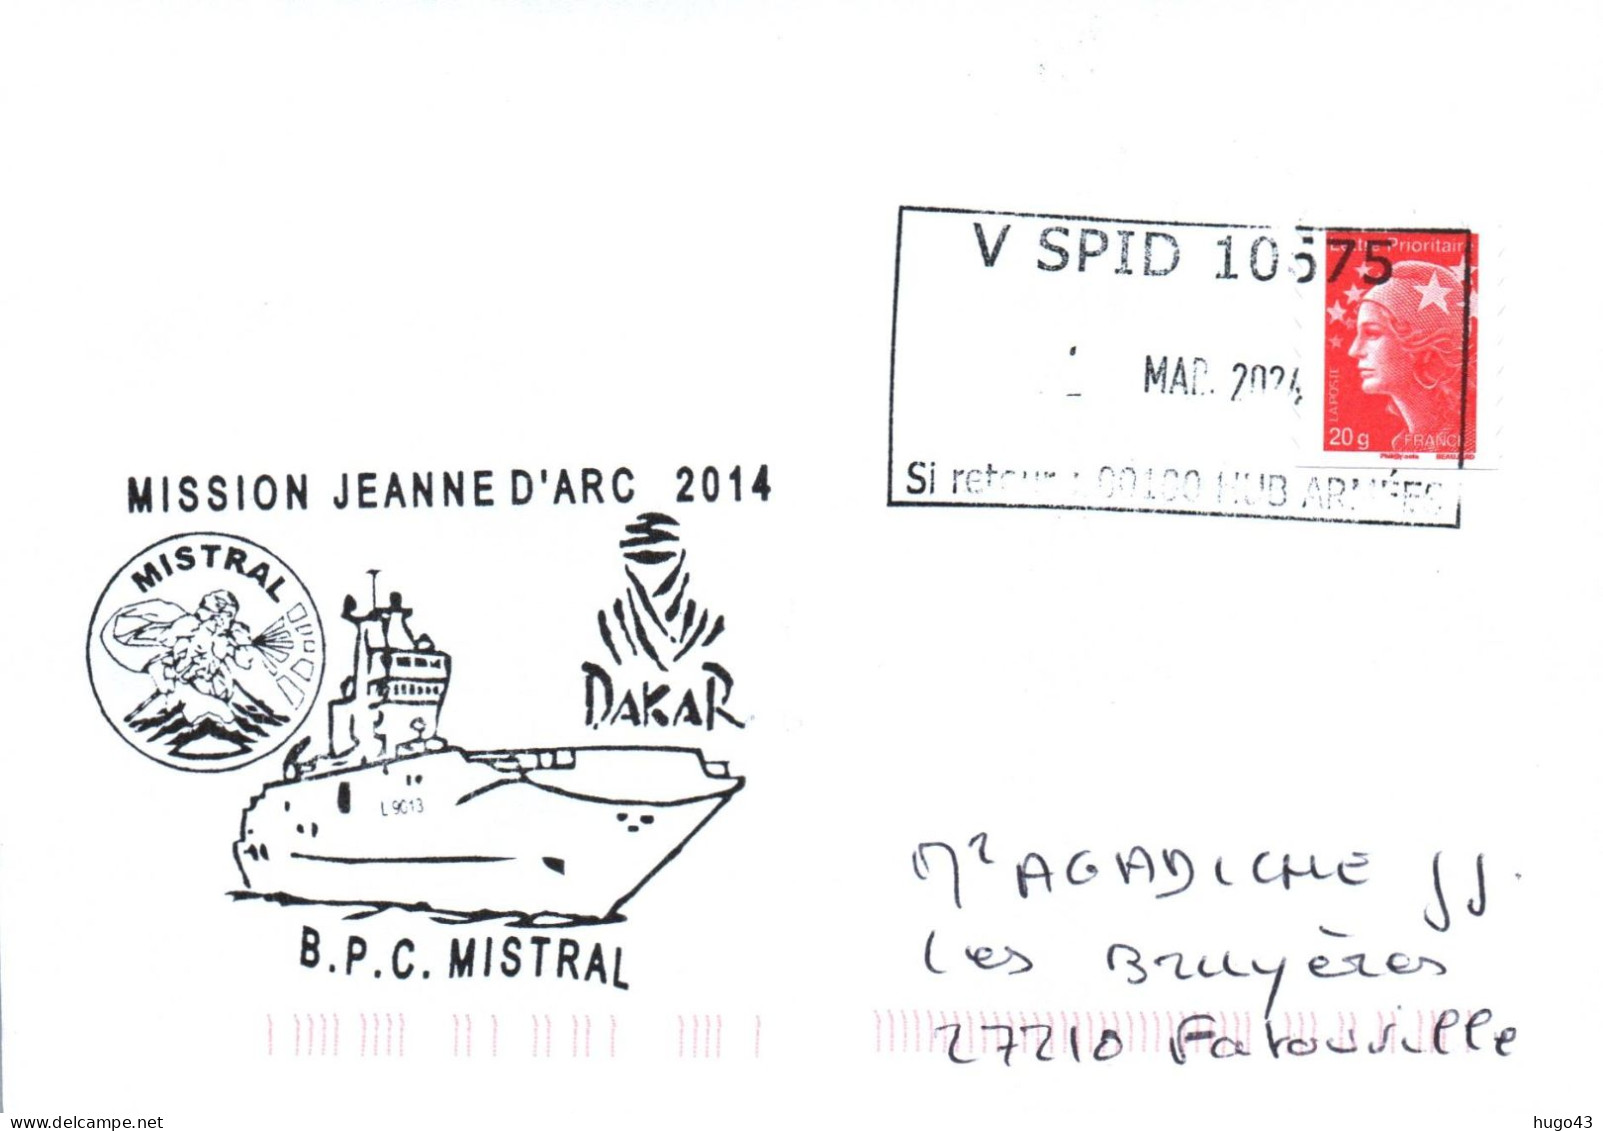 ENVELOPPE AVEC CACHET B.P.C. MISTRAL - MISSION JEANNE D' ARC 2014 - ESCALE A DAKAR - LE 01/03/2014 - Naval Post